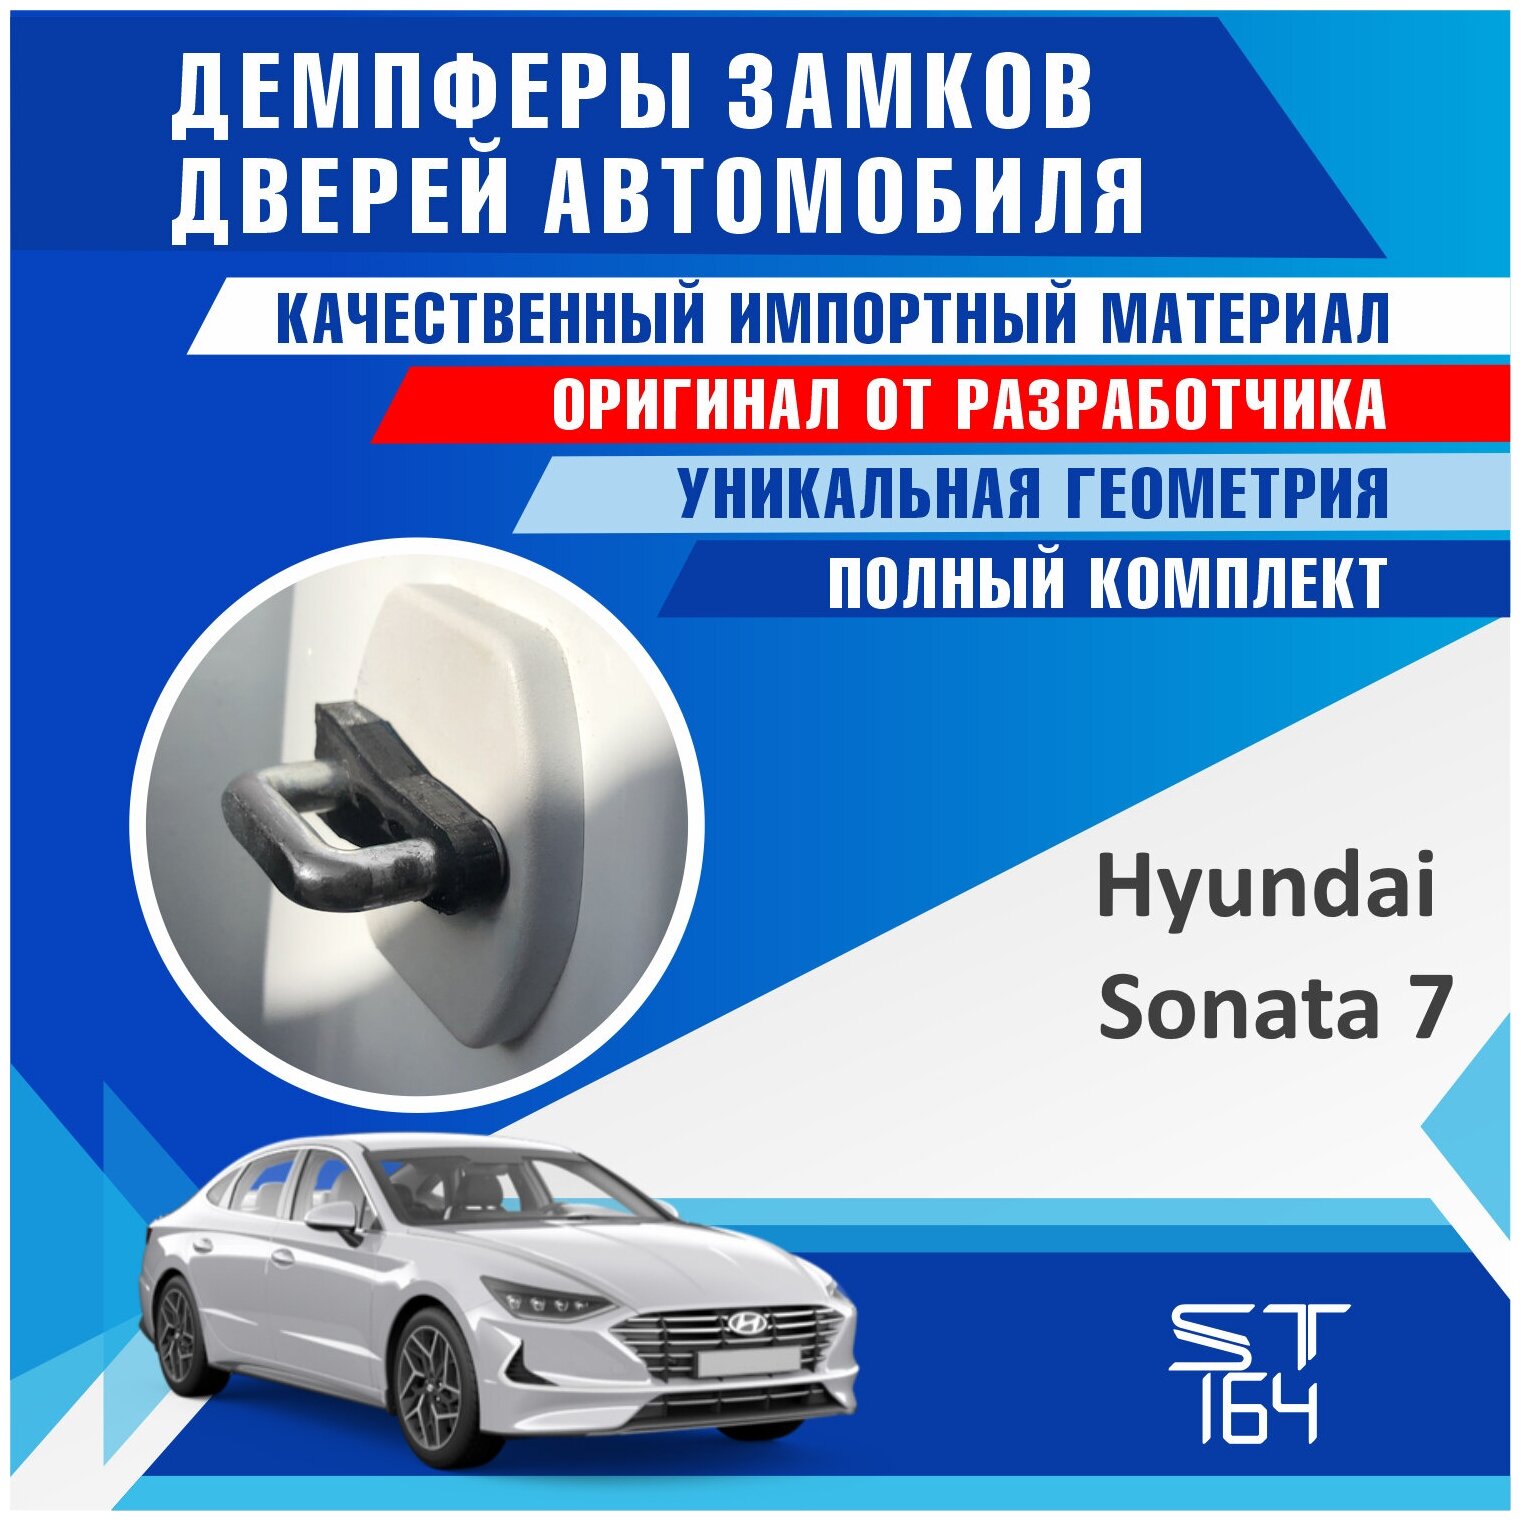 Демпферы замков дверей Хендай Соната 7 поколение ( Hyundai Sonata 7 ), на 4 двери + смазка